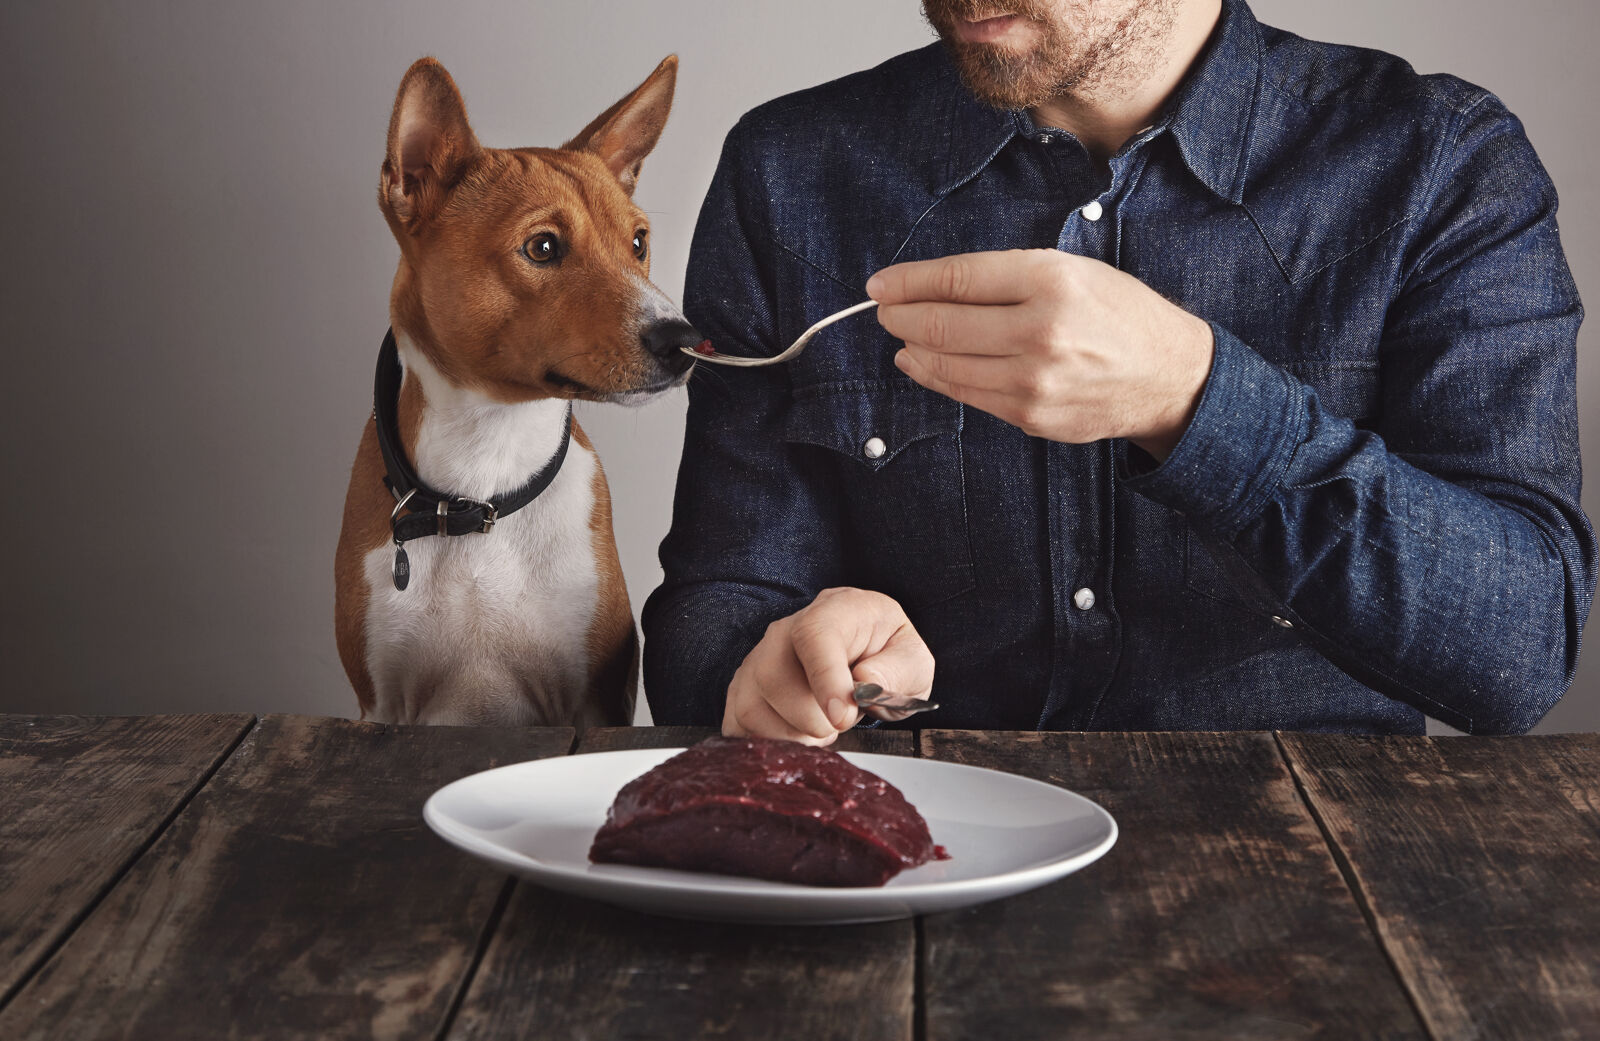 Pies wącha mięso na widelcu trzymanym przez mężczyznę